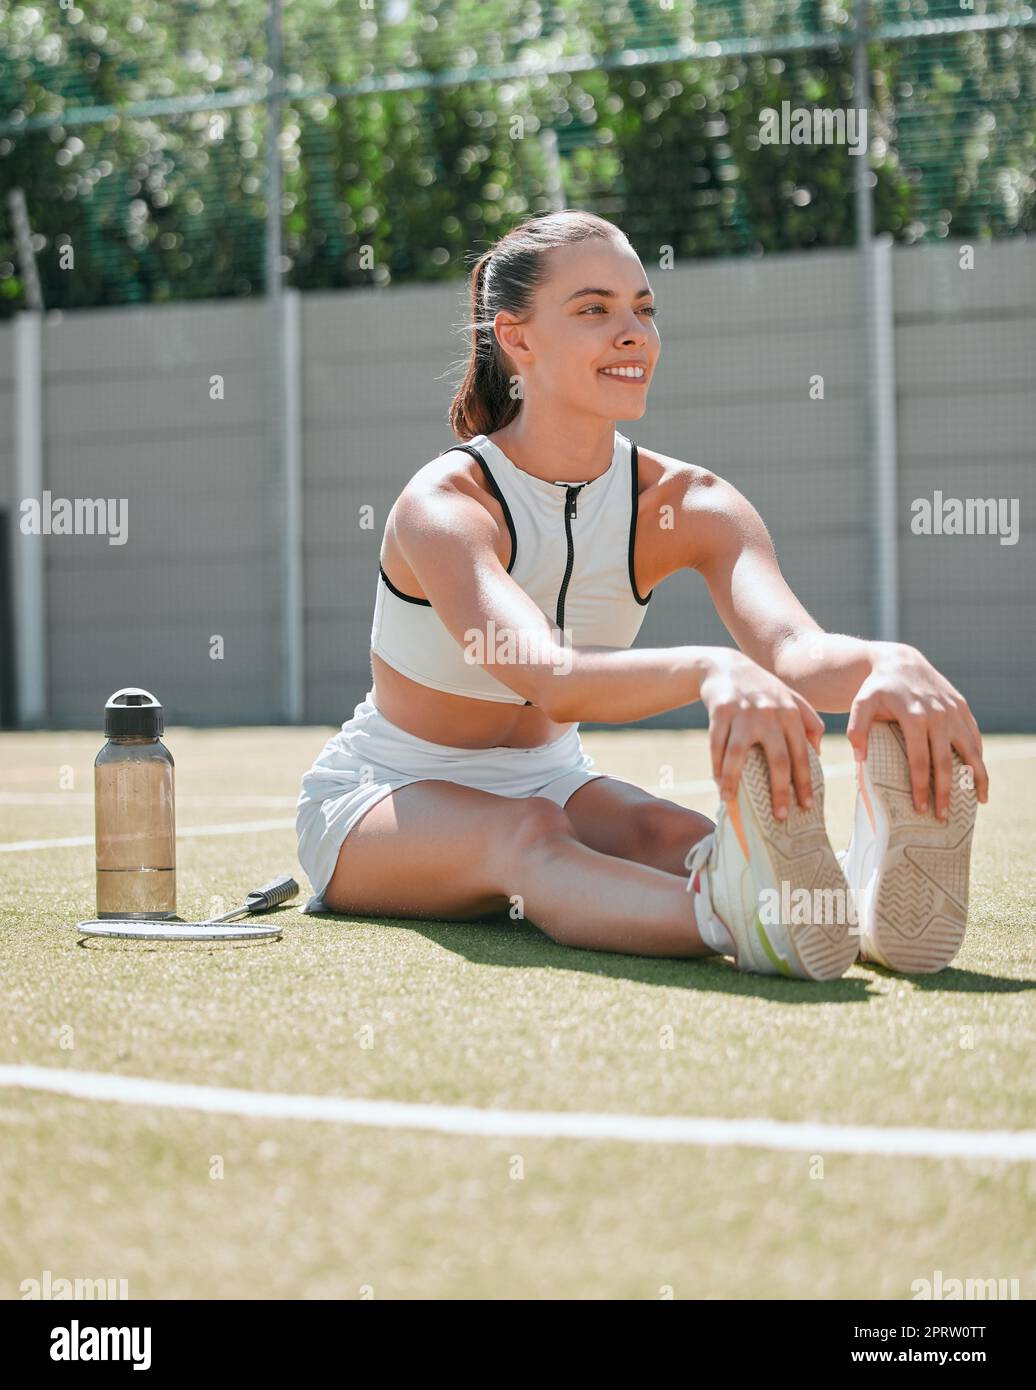 https://c8.alamy.com/compes/2prw0tt/mujer-jugador-de-tenis-y-piernas-estiradas-en-la-cancha-de-tenis-para-hacer-ejercicio-flexibilidad-muscular-y-prevencion-de-lesiones-para-la-competicion-de-partidos-formacion-de-soporte-2prw0tt.jpg